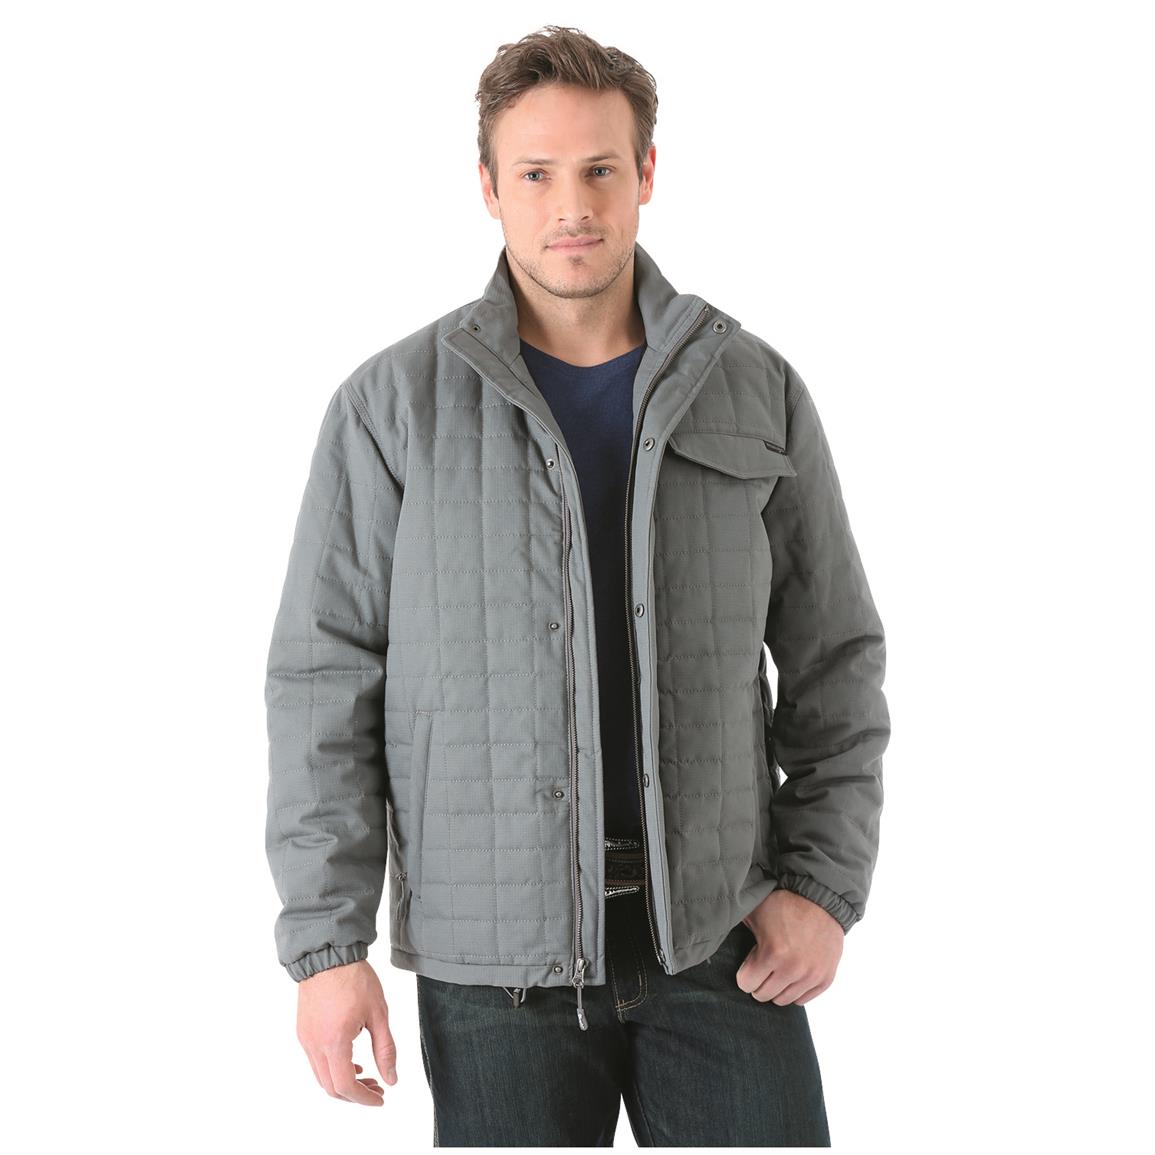 Wrangler Men's Chore Jacket - 680288, Insulated Jackets & Coats at ...